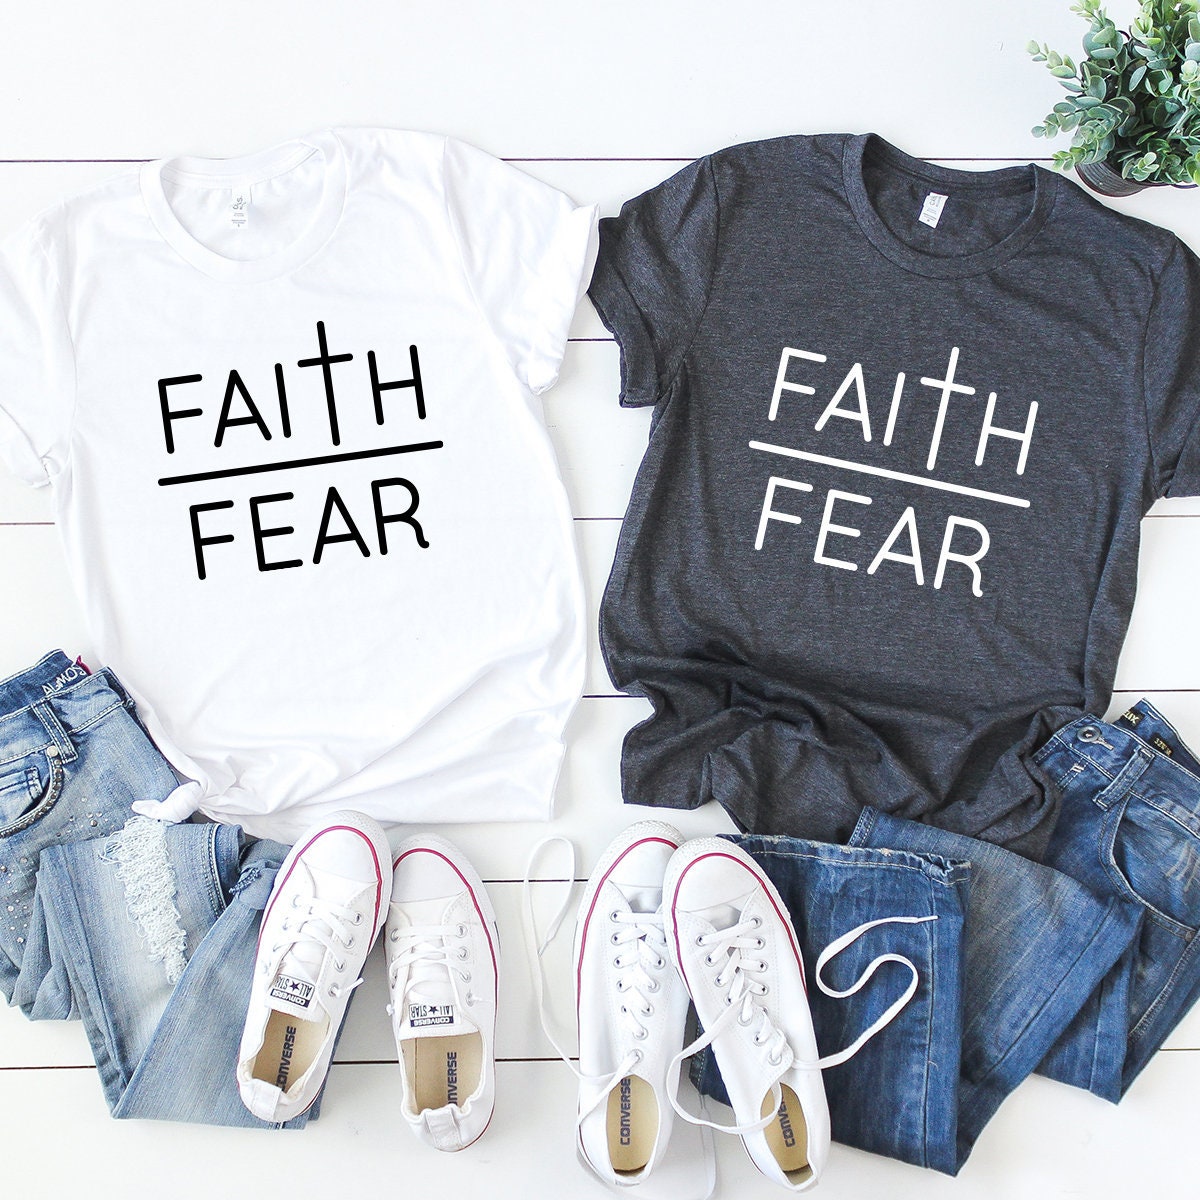 Faith Over Fear T-Shirt, Christian Shirt, Vertical Cross Shirt, Prayers Shirt, Inspirational Christian Tee, Religious Shirt - Fastdeliverytees.com